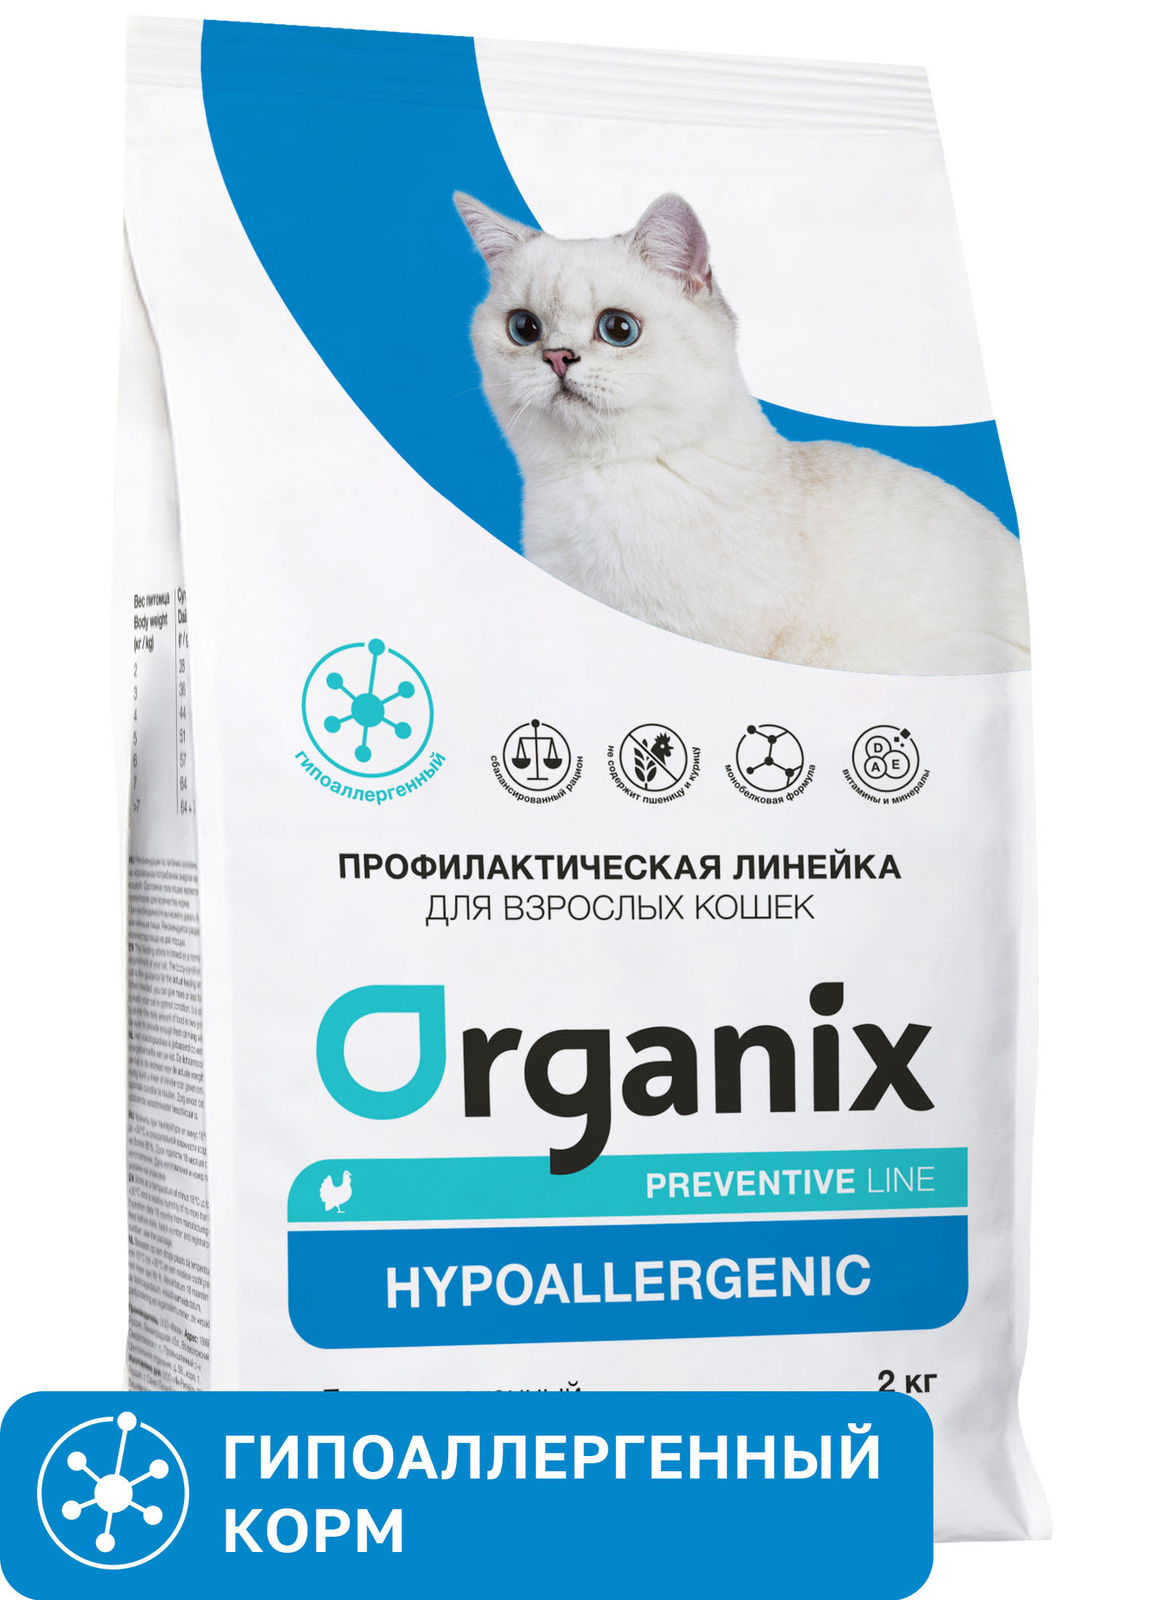 Organix Preventive Line Organix Preventive Line hypoallergenic сухой корм для кошек Гипоаллергенный (600 г) organix preventive line organix preventive line renal сухой корм для кошек поддержание здоровья почек 600 г